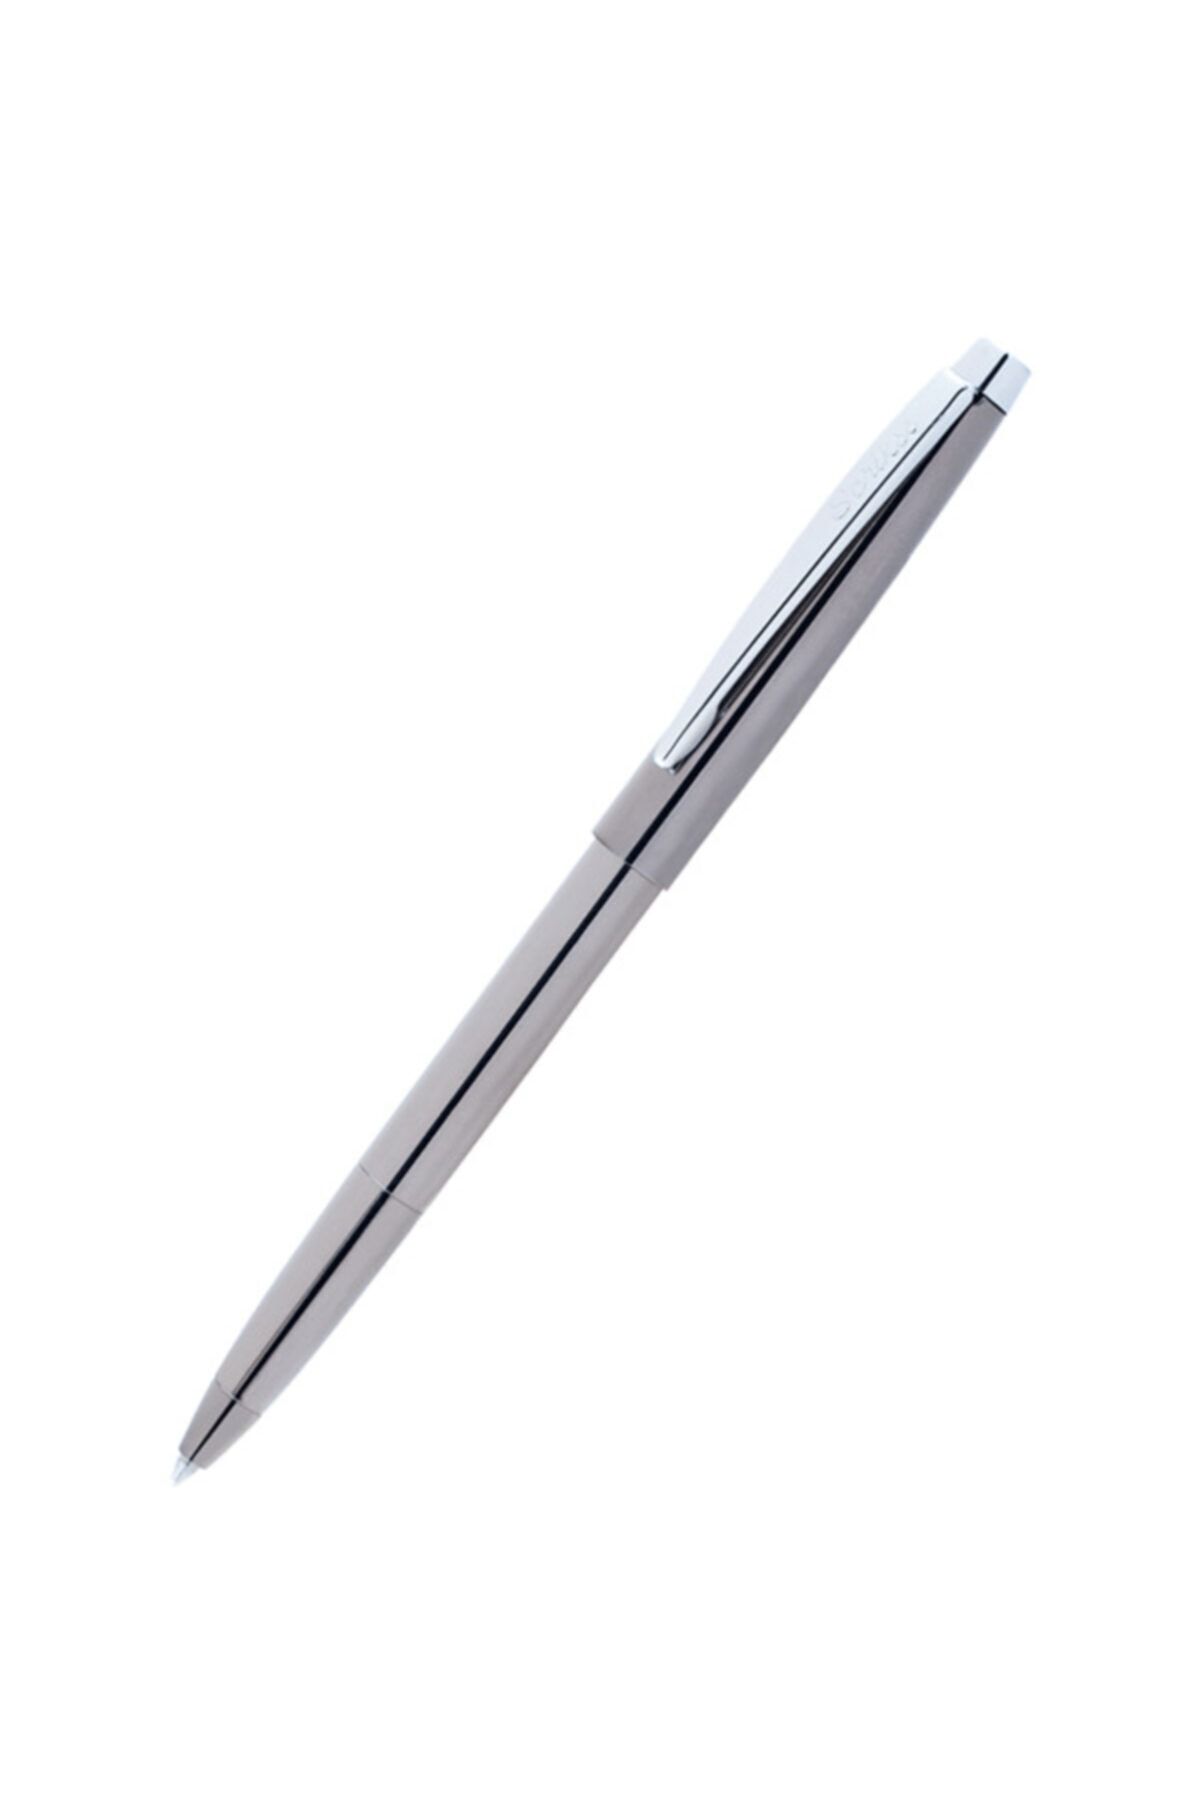 Scrikss Versatil Kalem Prestige 0.7 Mm Karışık Renk (36 Lı Paket)